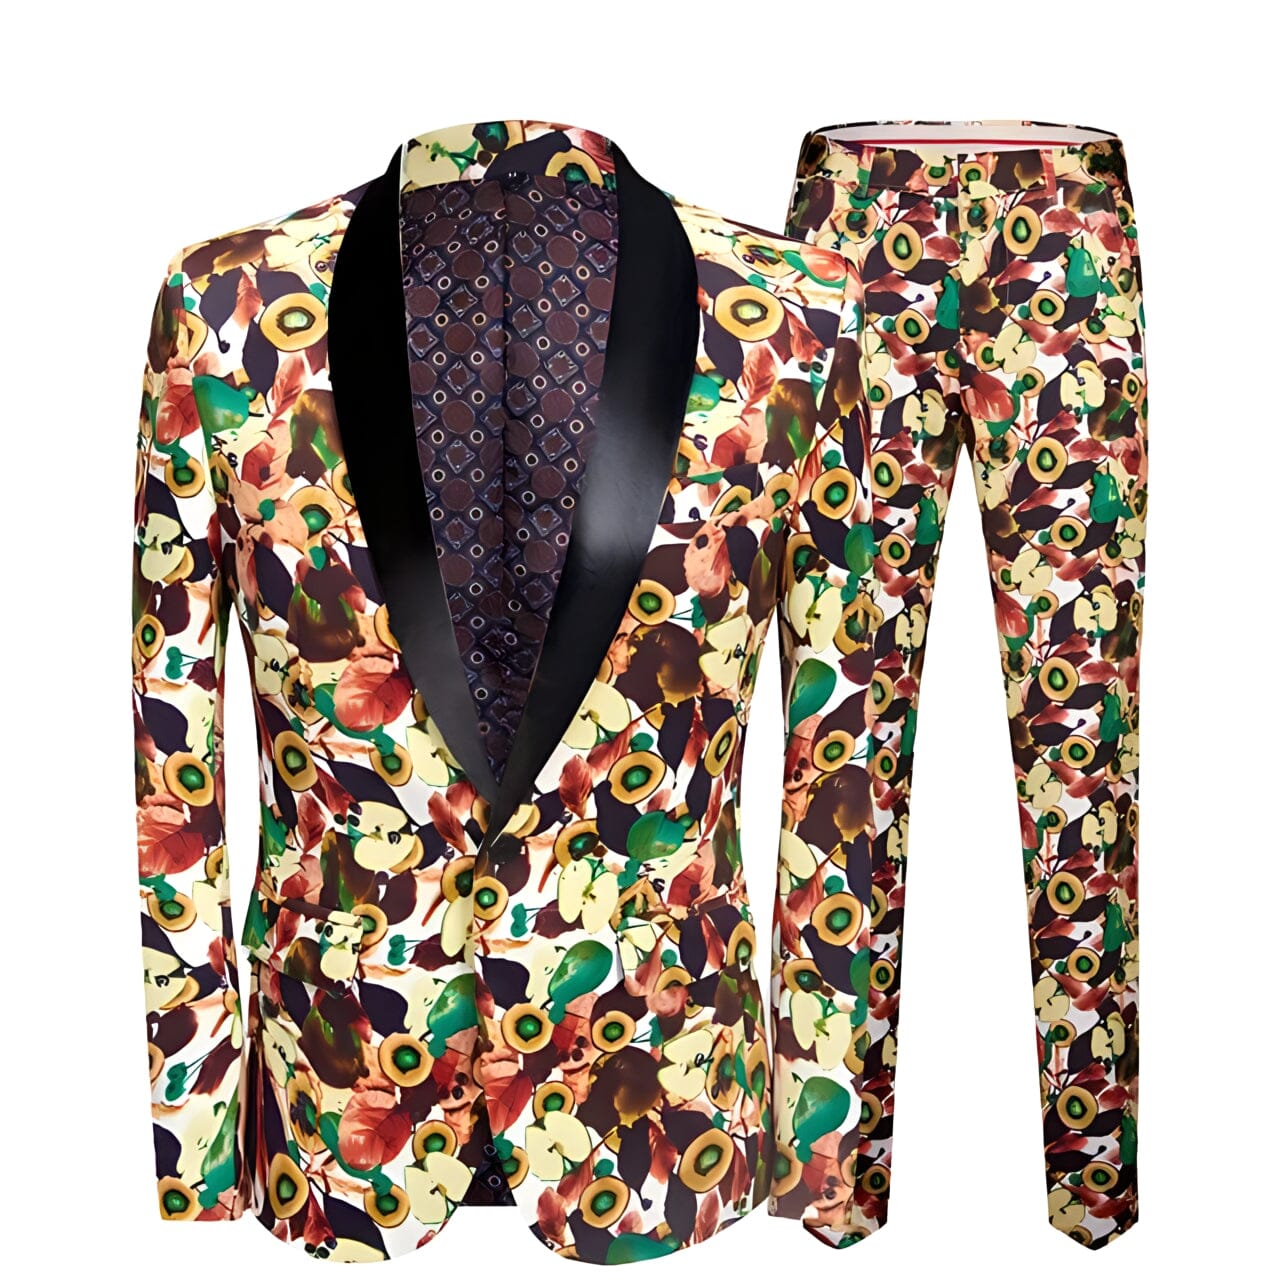 The Ferdinand Slim Fit Two-Piece Suit PYJTRL Official Store Black Lapel XXS 